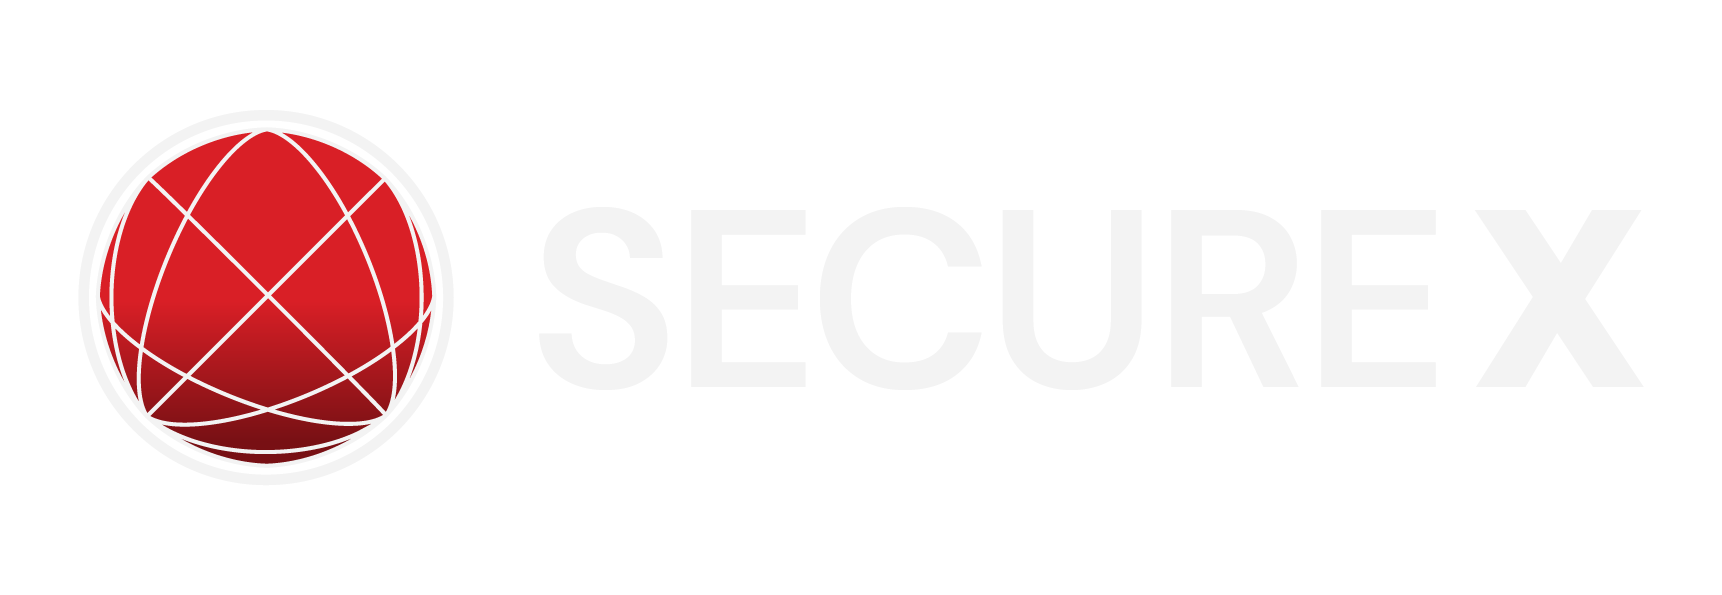 SecureX